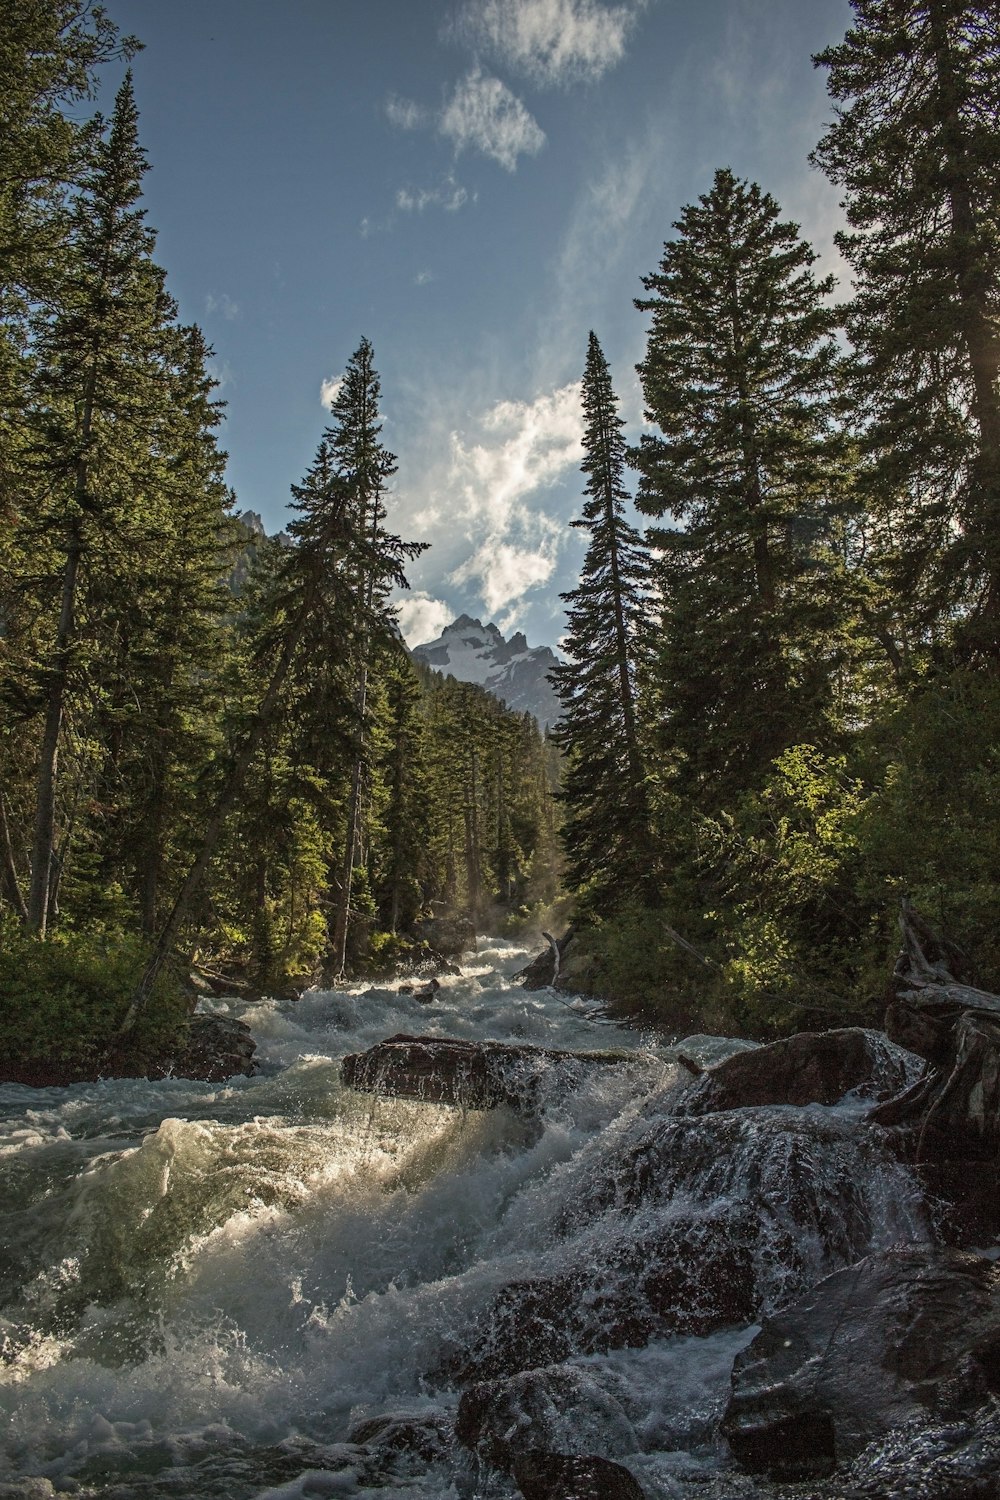 Landschaftsfotografie eines Flusses mit Bäumen